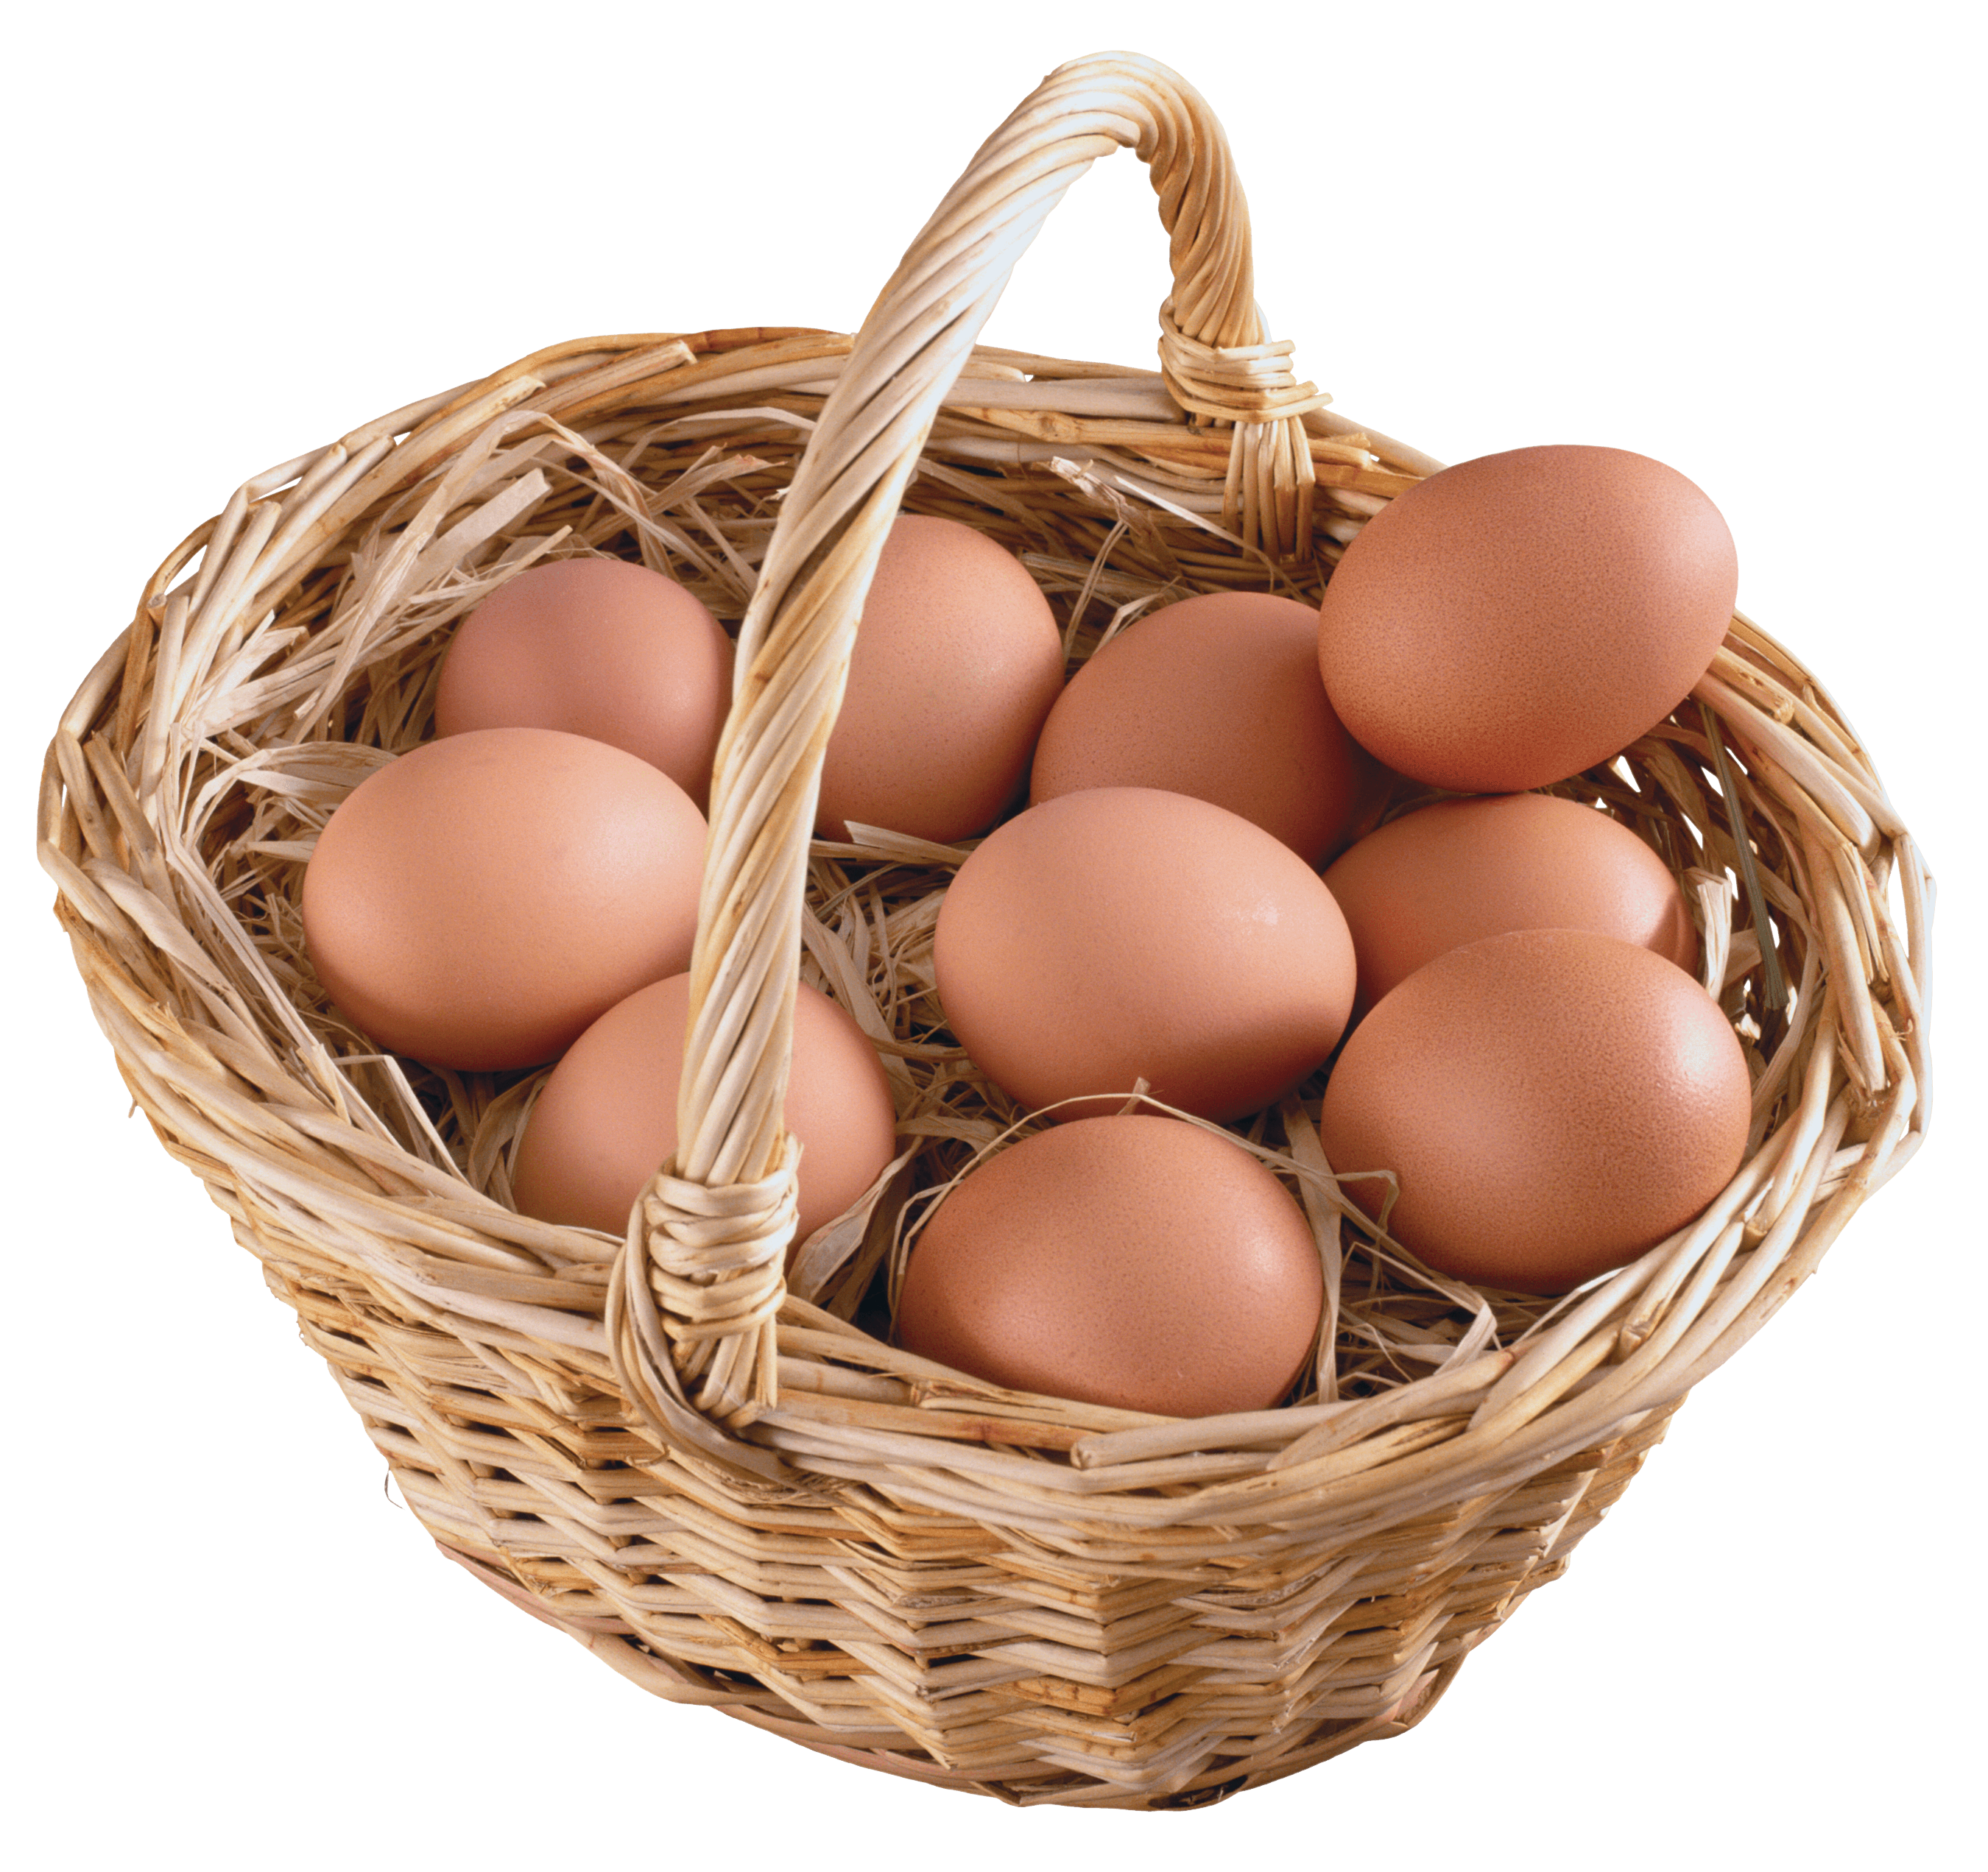 टोकरी में अंडे